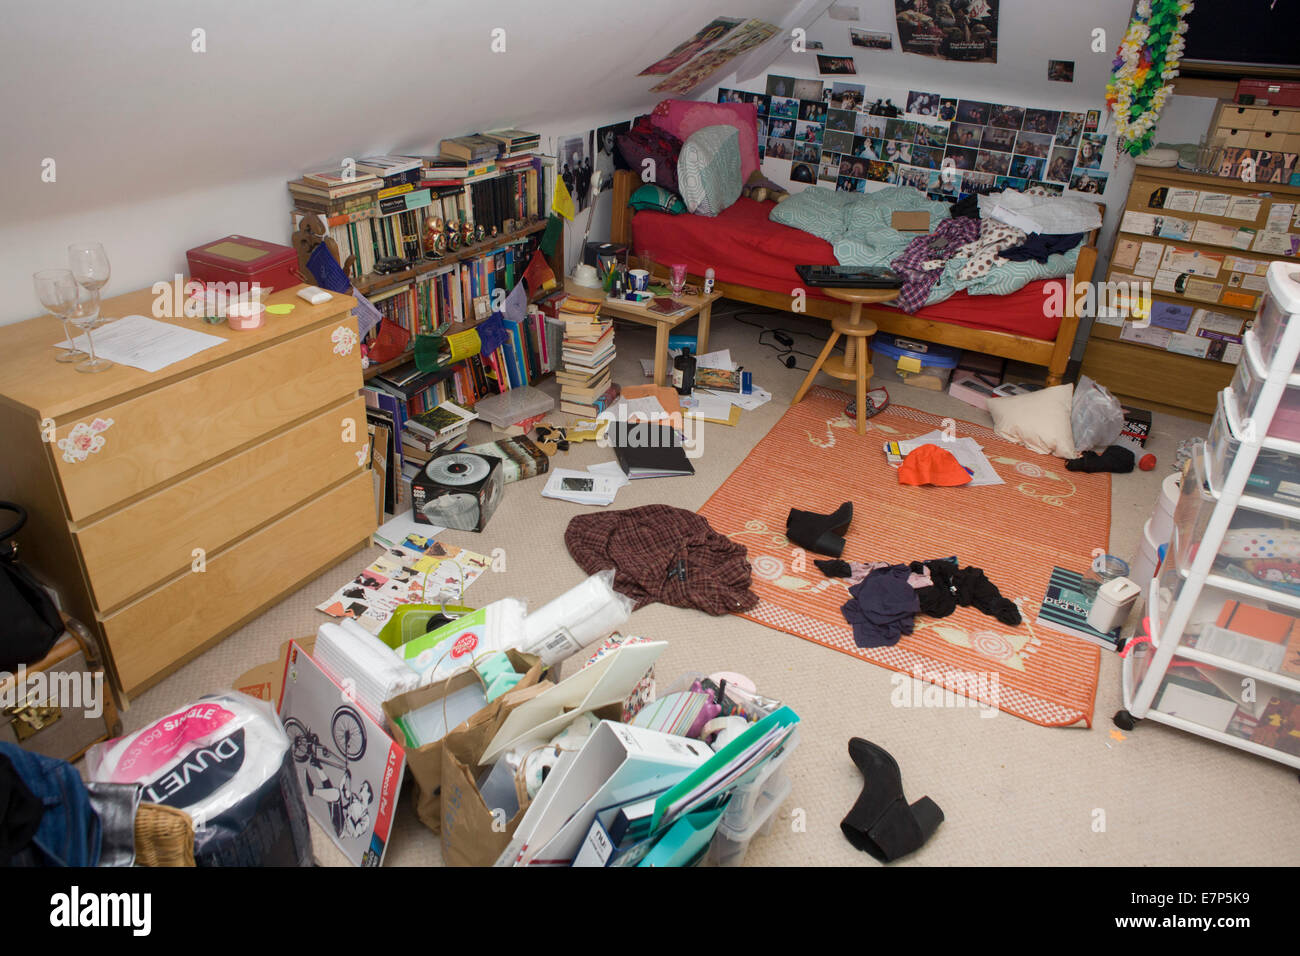 Eine unordentliche Jugendzimmer mit Kleidung, Büchern und Besitz über den Boden verlassen. Stockfoto